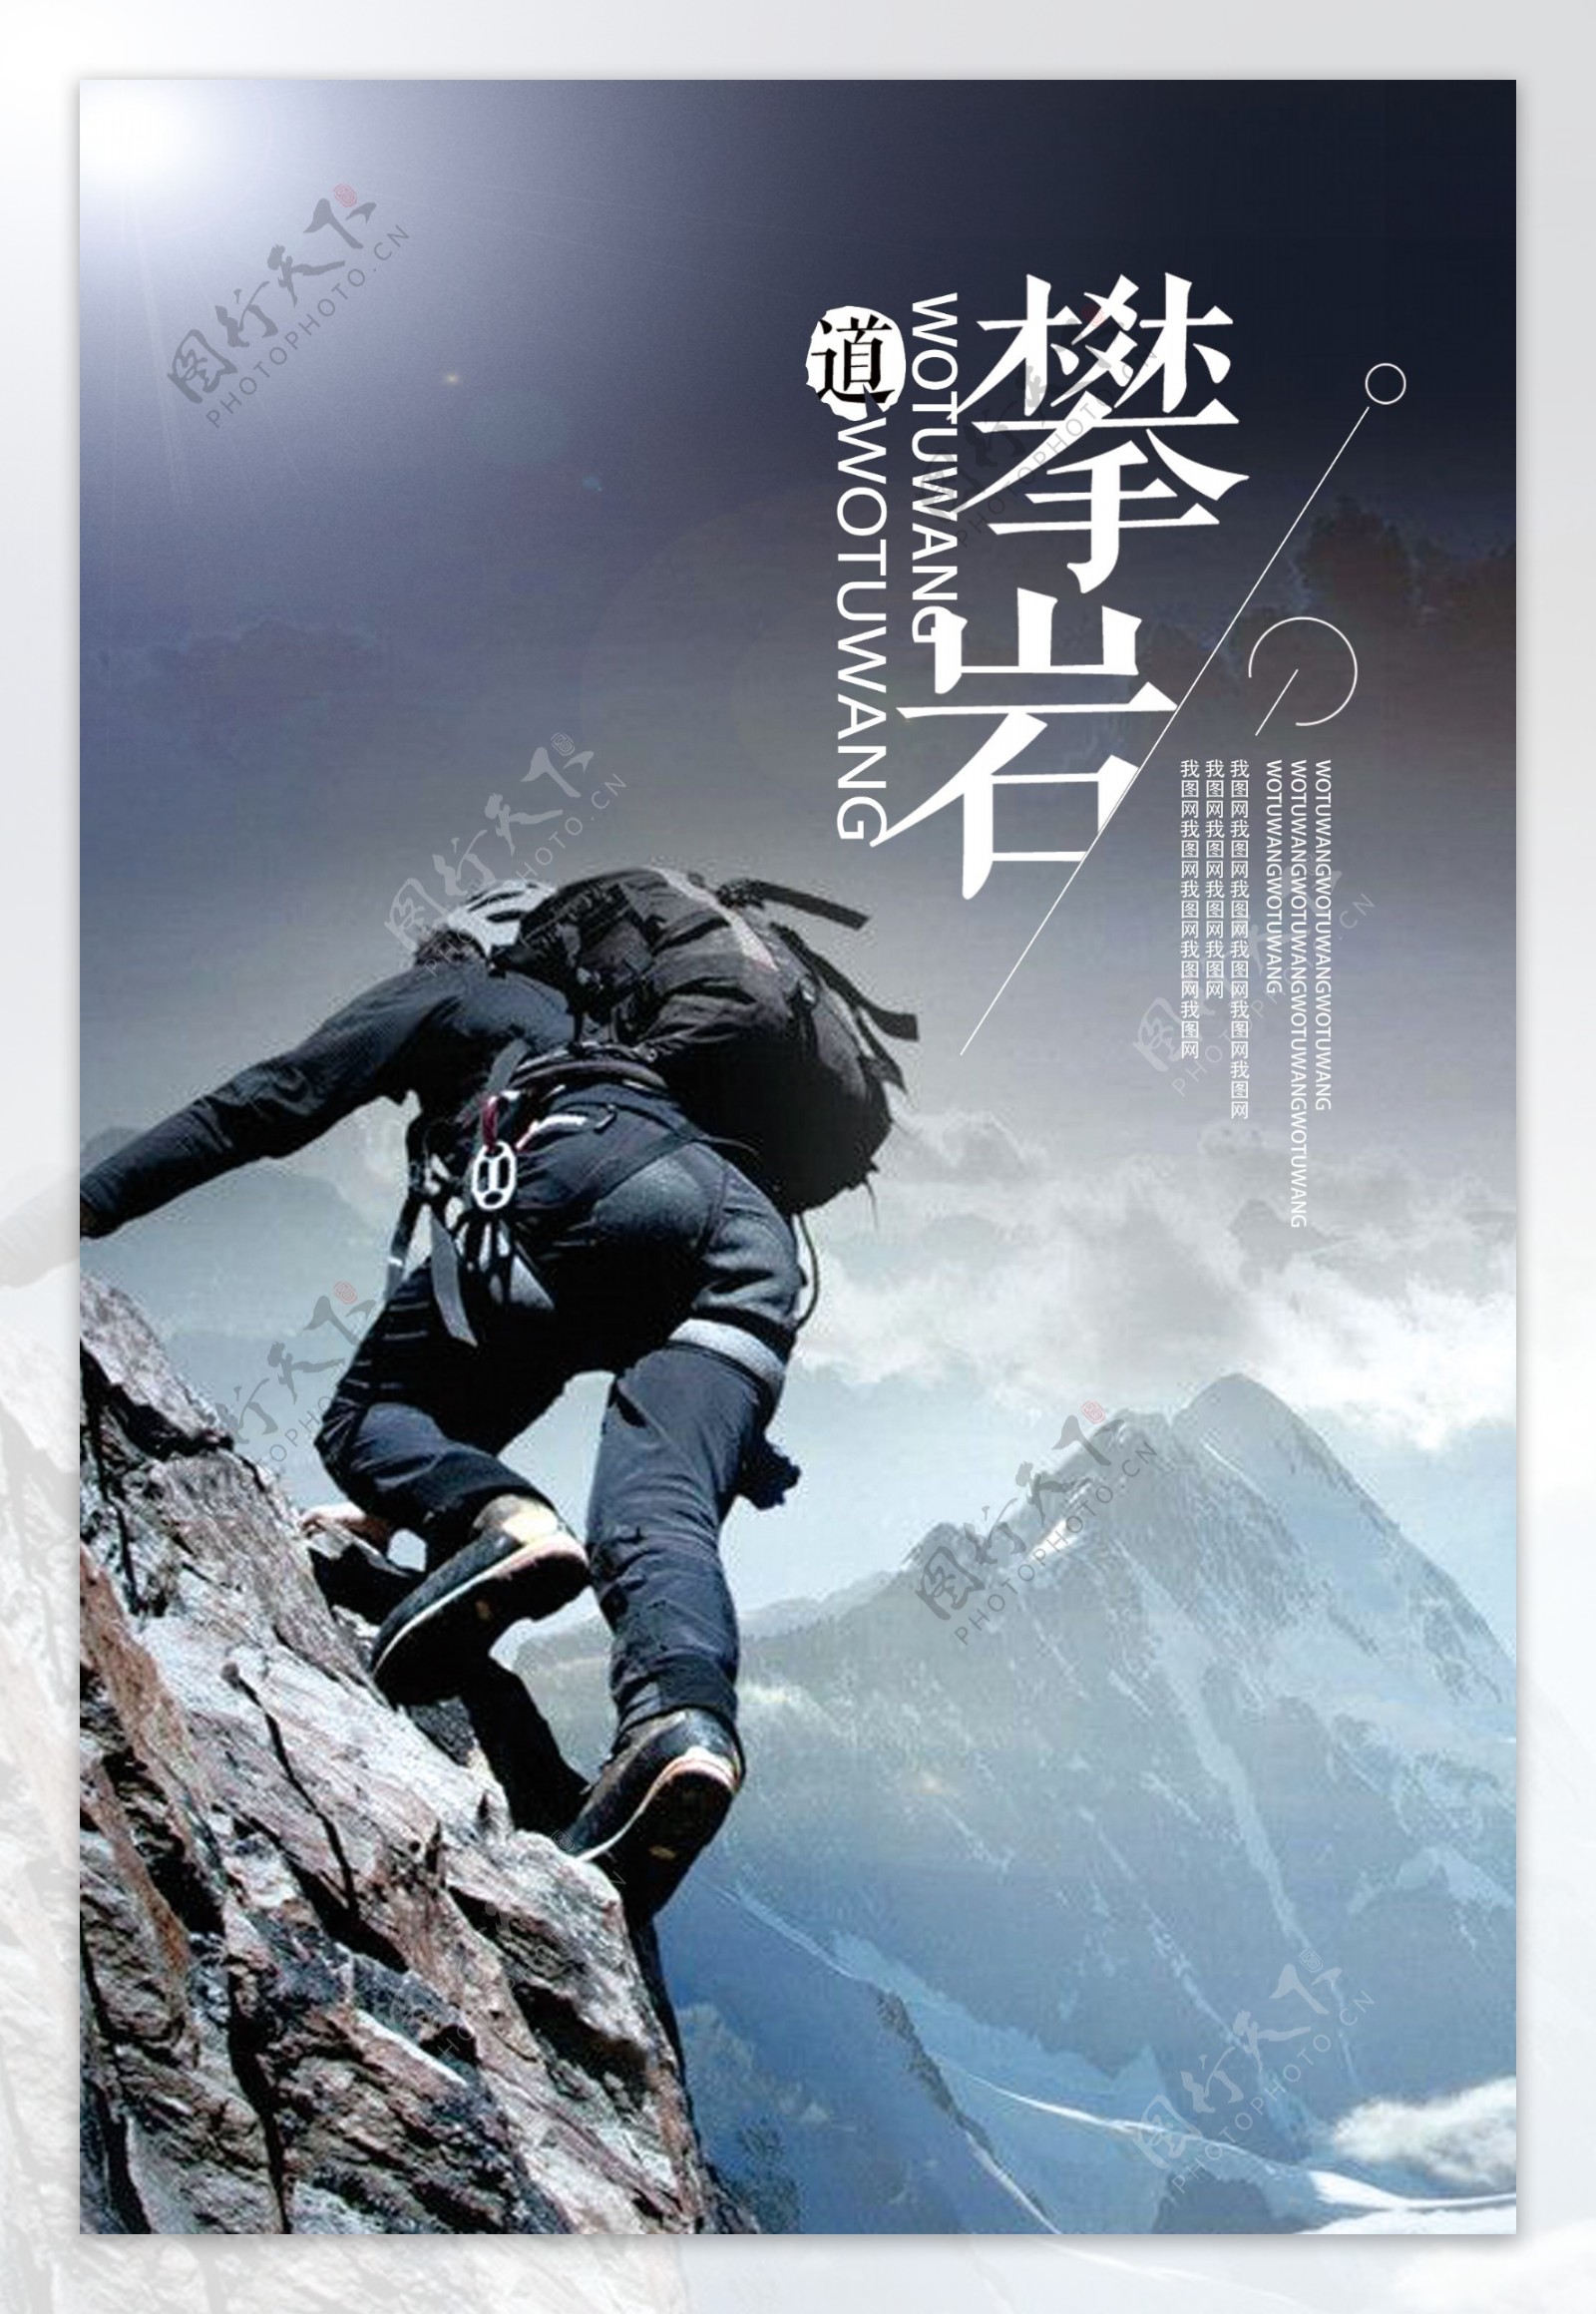 极限挑战攀岩运动海报